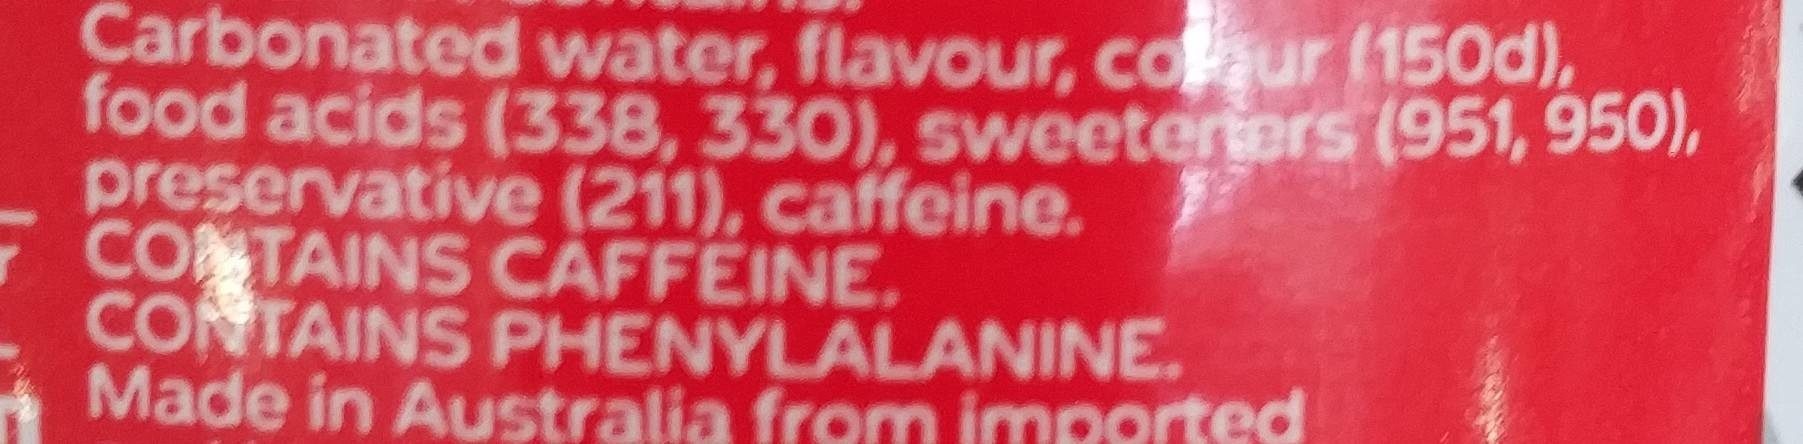 Coca cola Diet - Ingredients